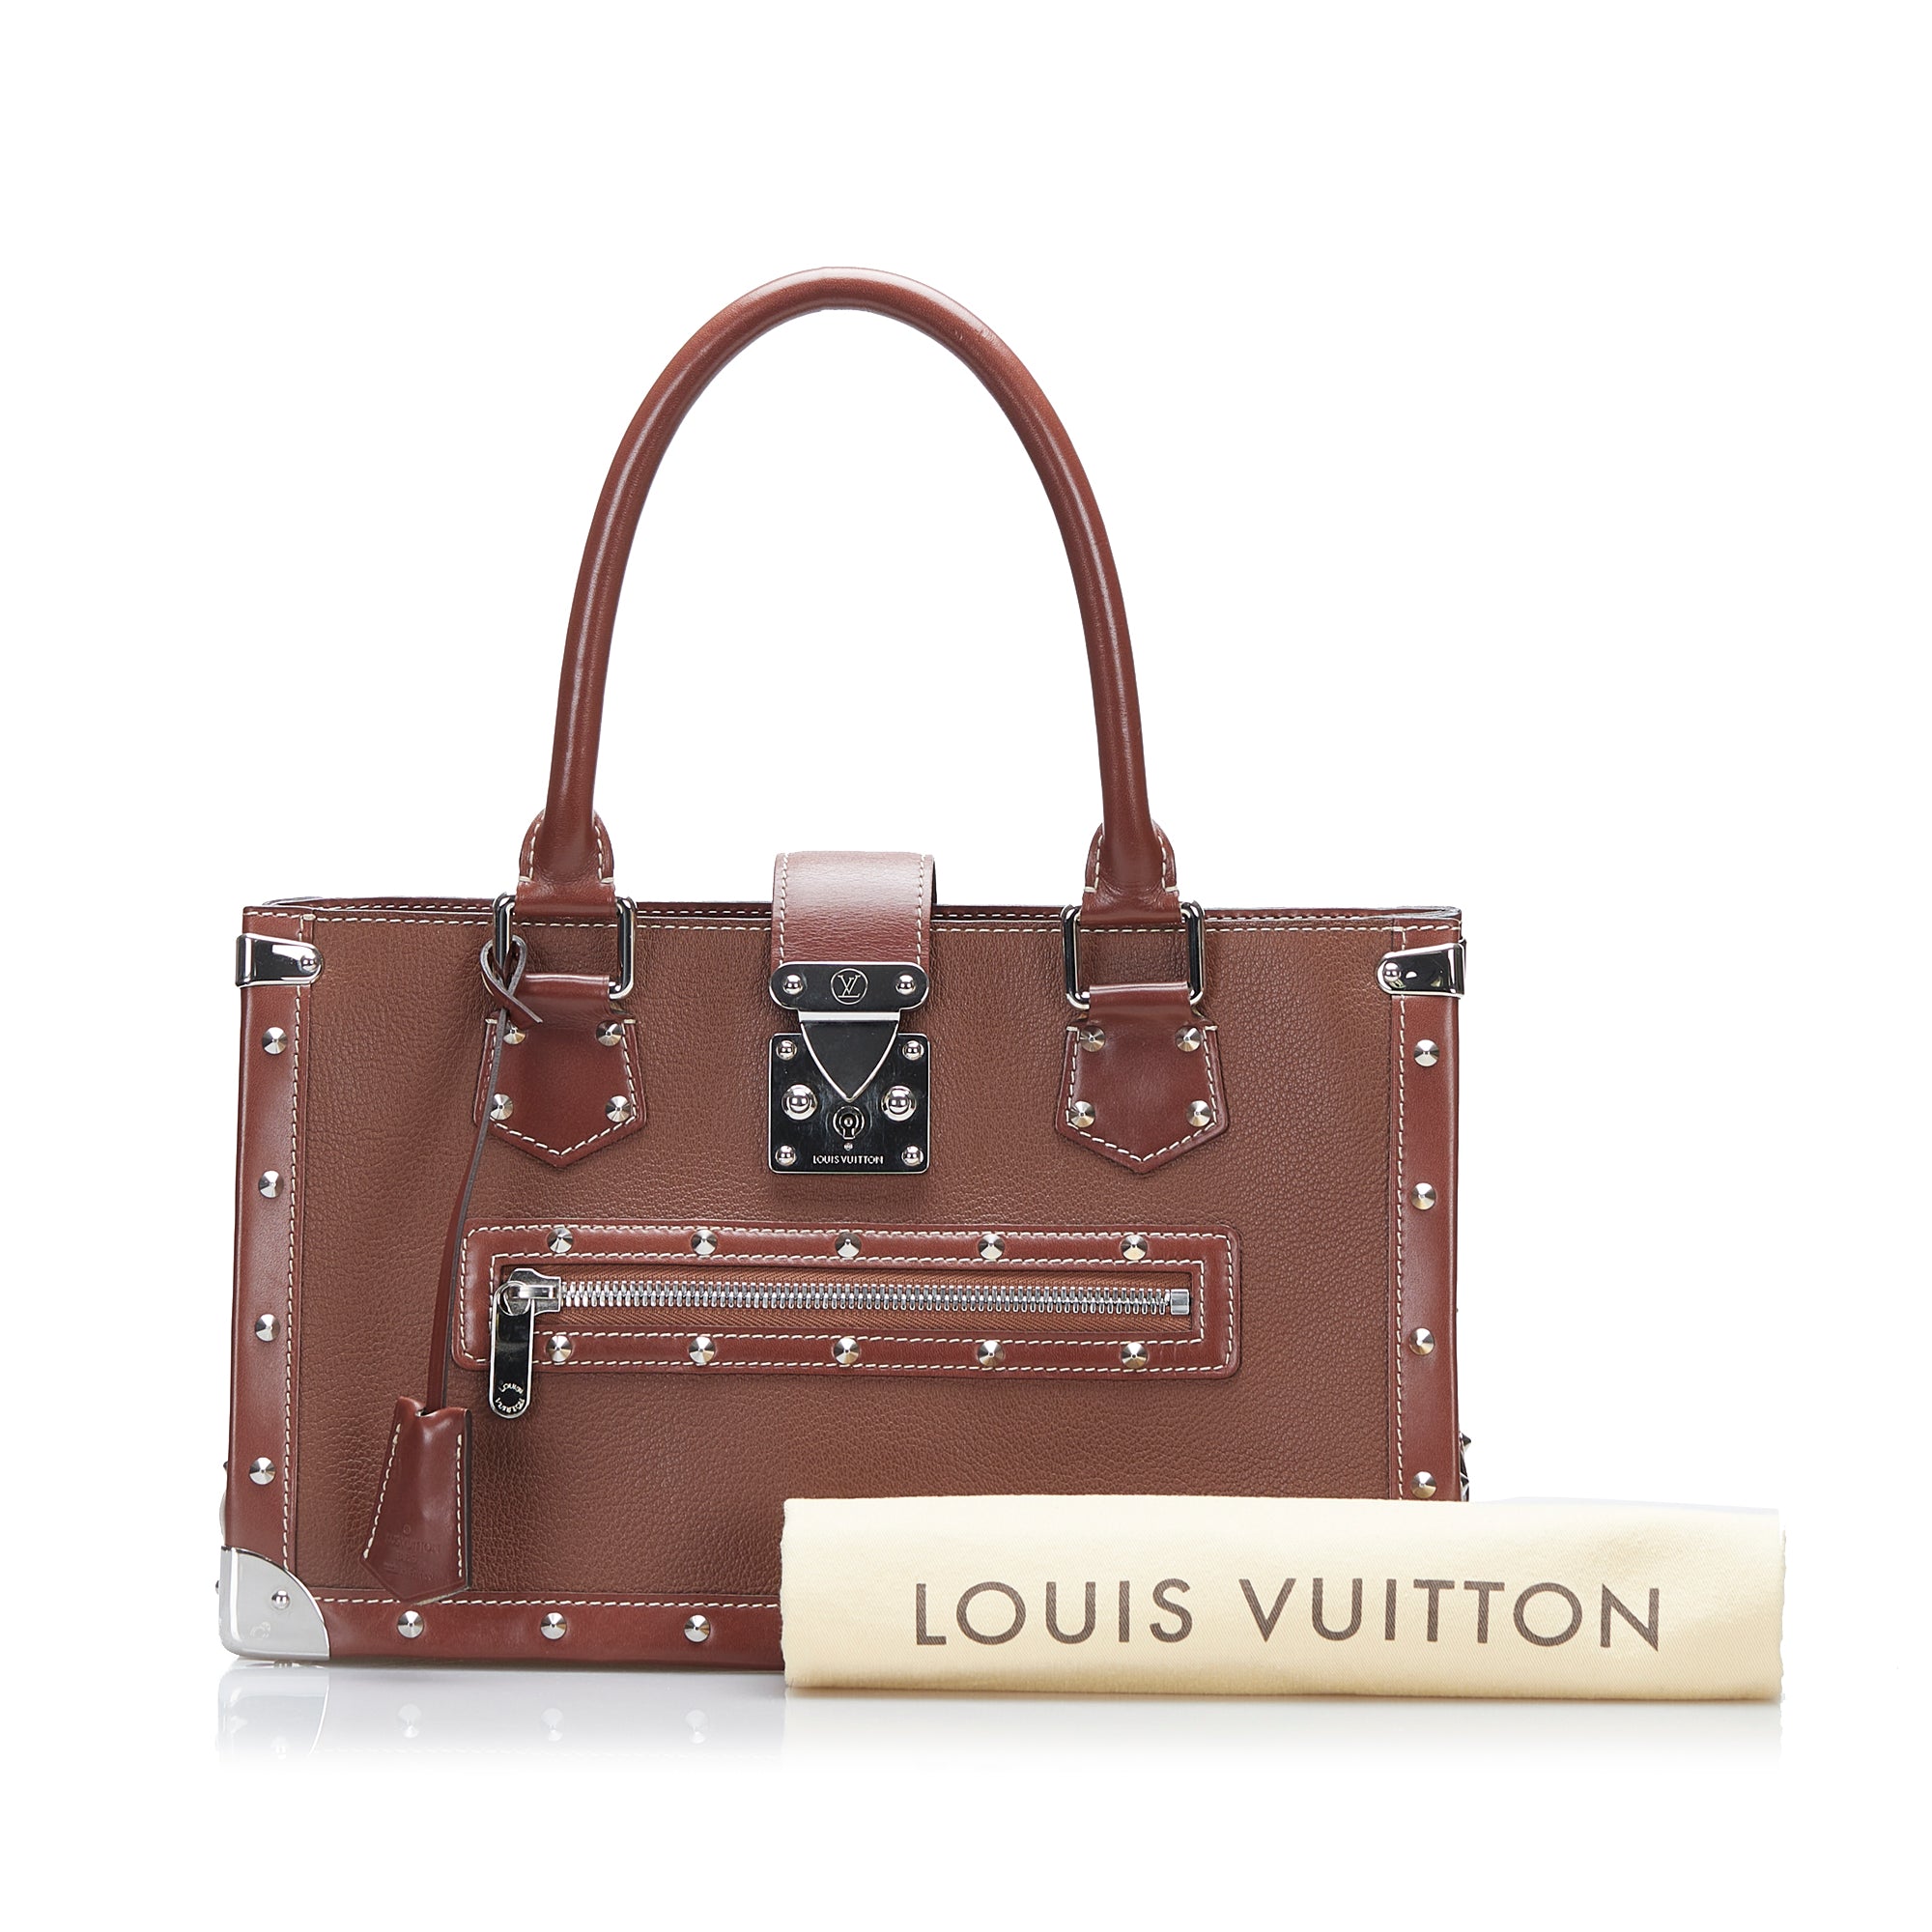 Louis Vuitton Le Fabuleux Leather Handbag